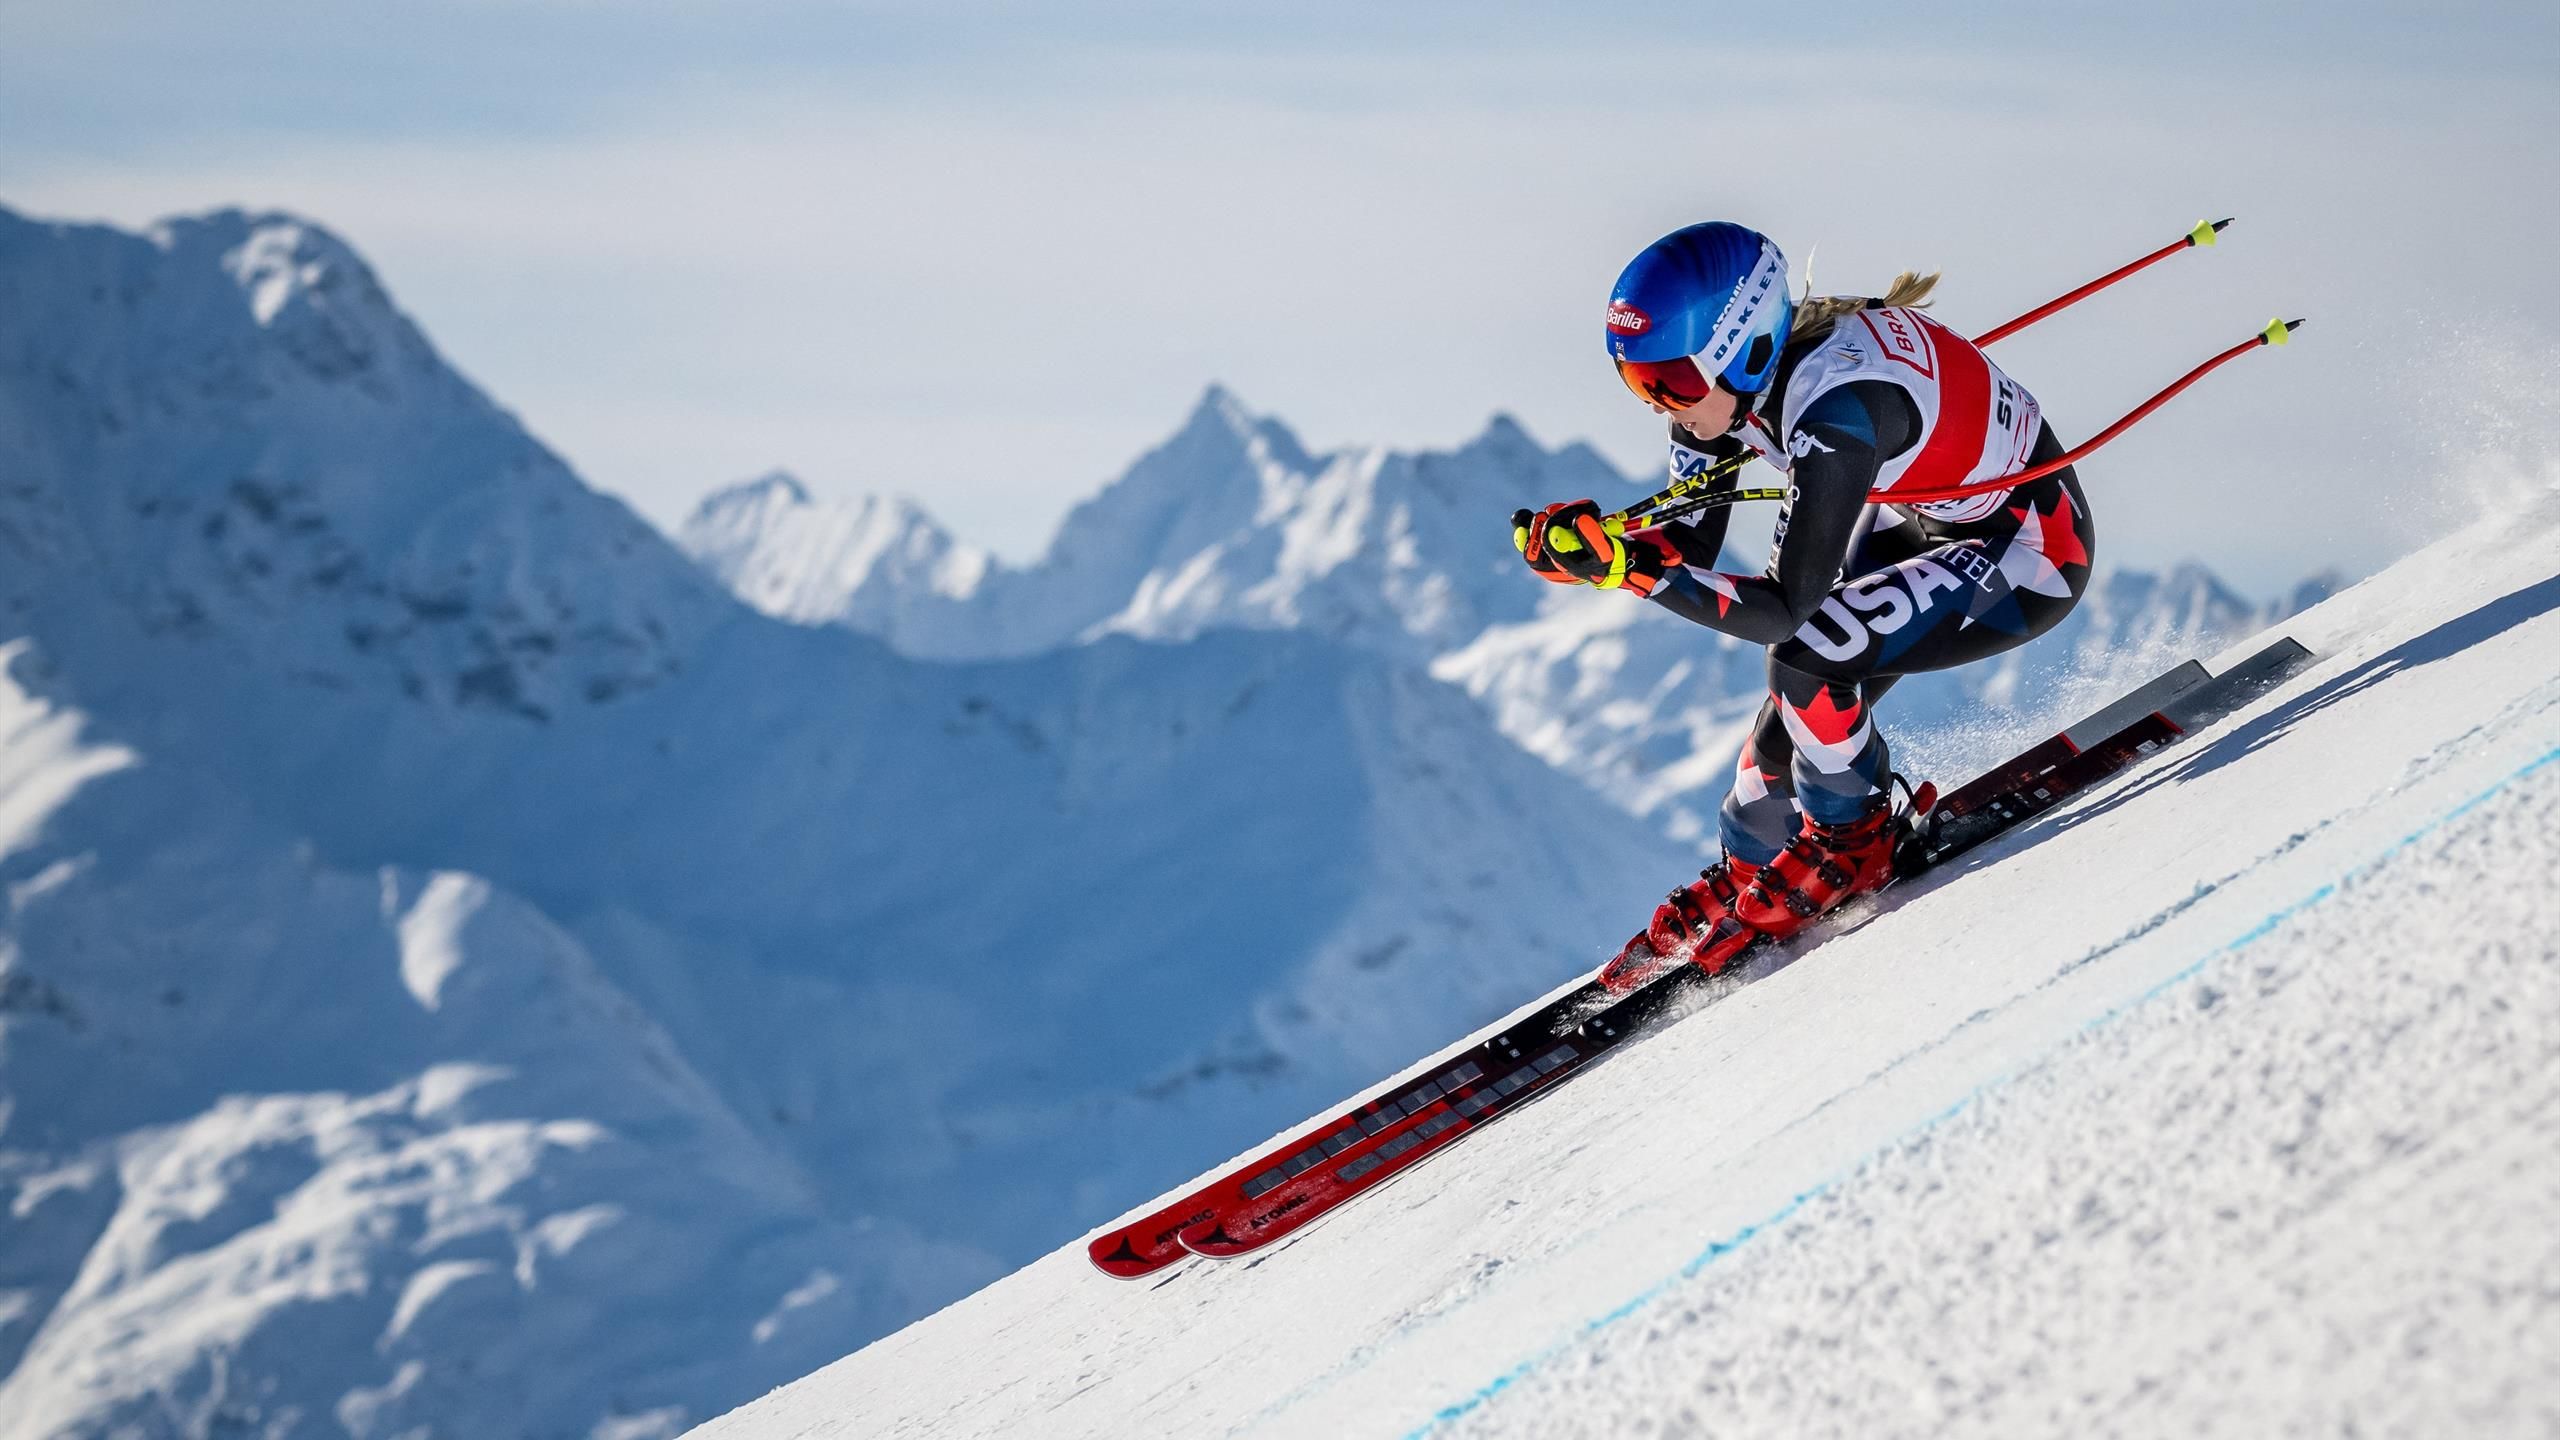 St. Moritz: Mikaela Shiffrin triumphs in the slopes – Emma Eicher also shines